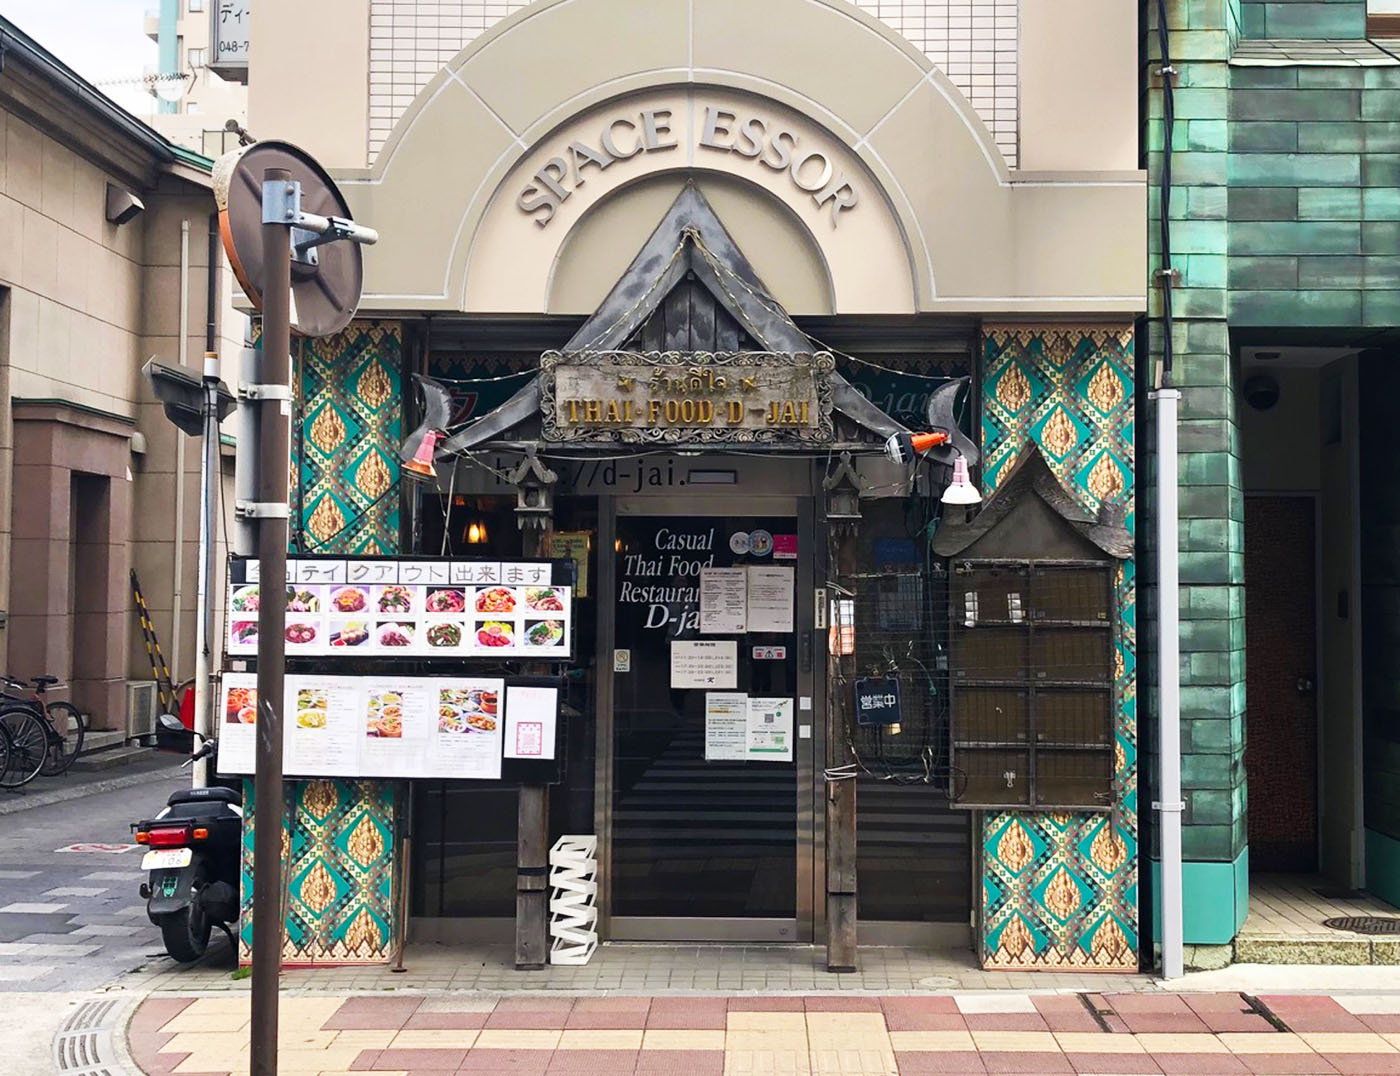 浦和西口のタイ料理店ディージャイ (D-jai)の店舗外観